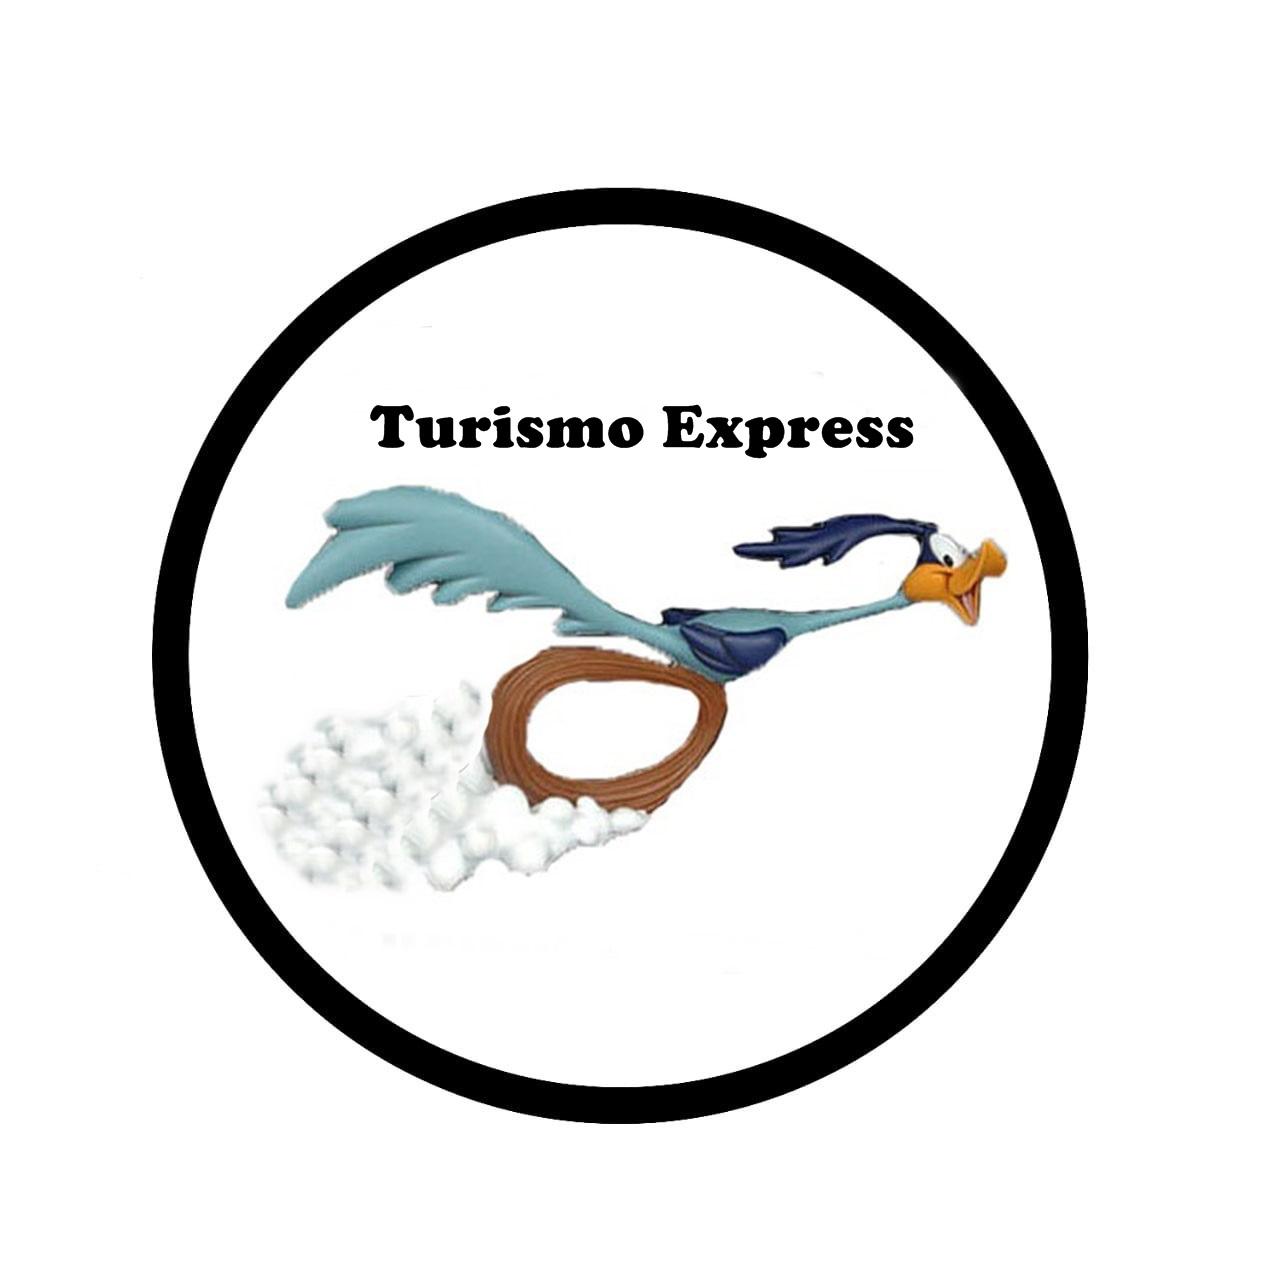 Agencia de negocios y turismo express